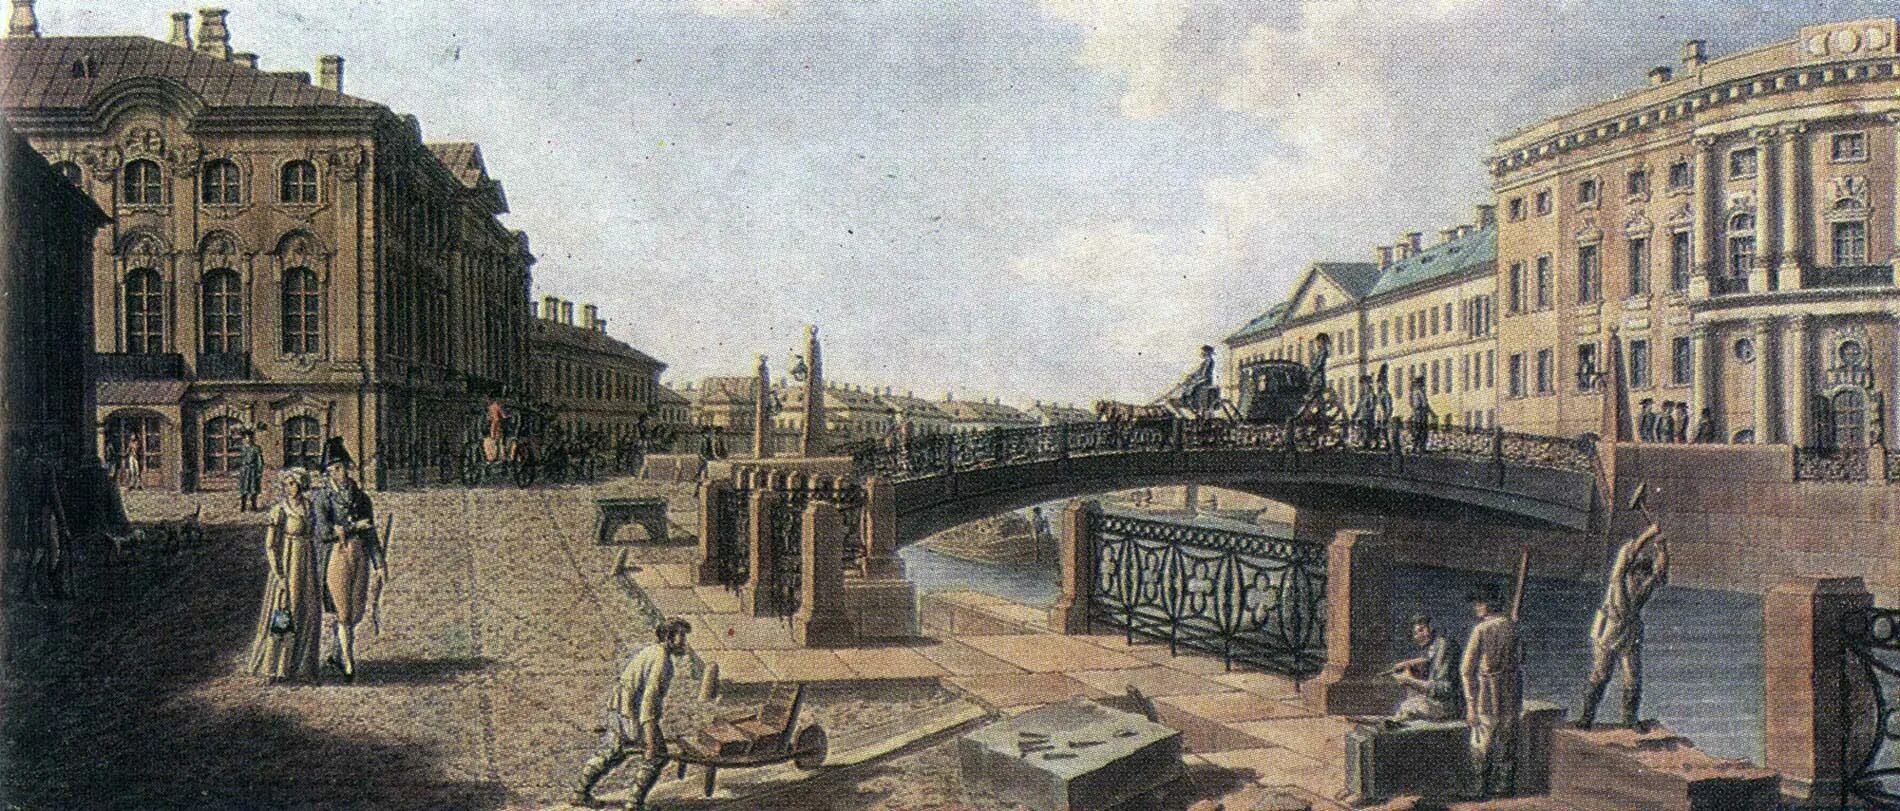 Екатерининский канал Санкт-Петербург 19 век.